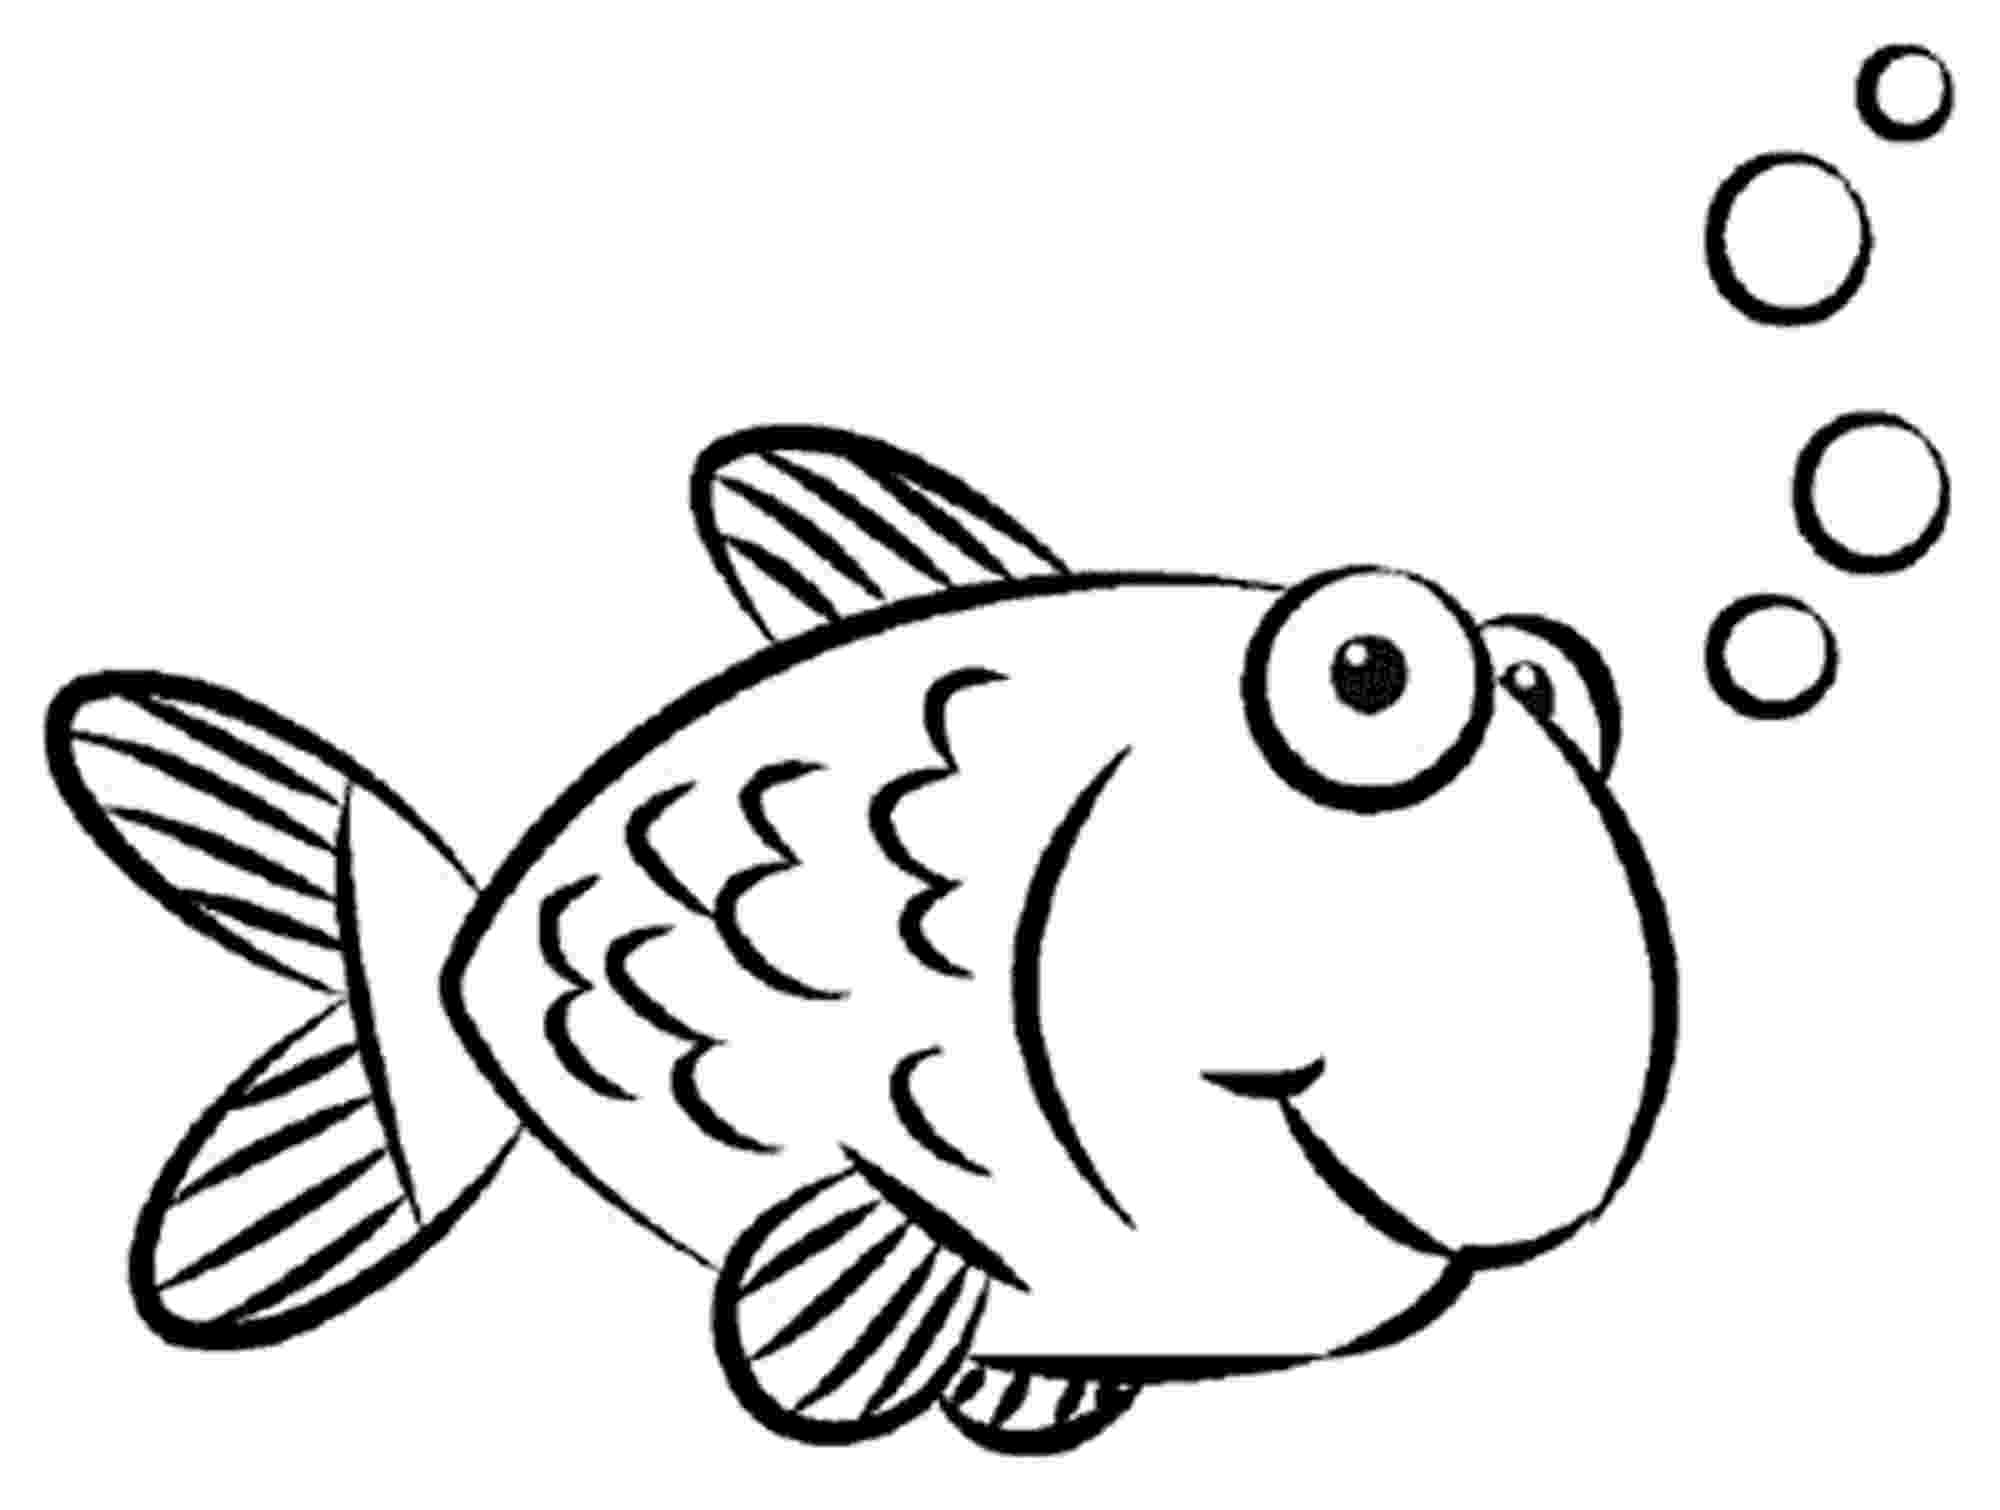 kids pictures of fish Épinglé par pradeep gamage sur google fish coloring page fish kids pictures of 